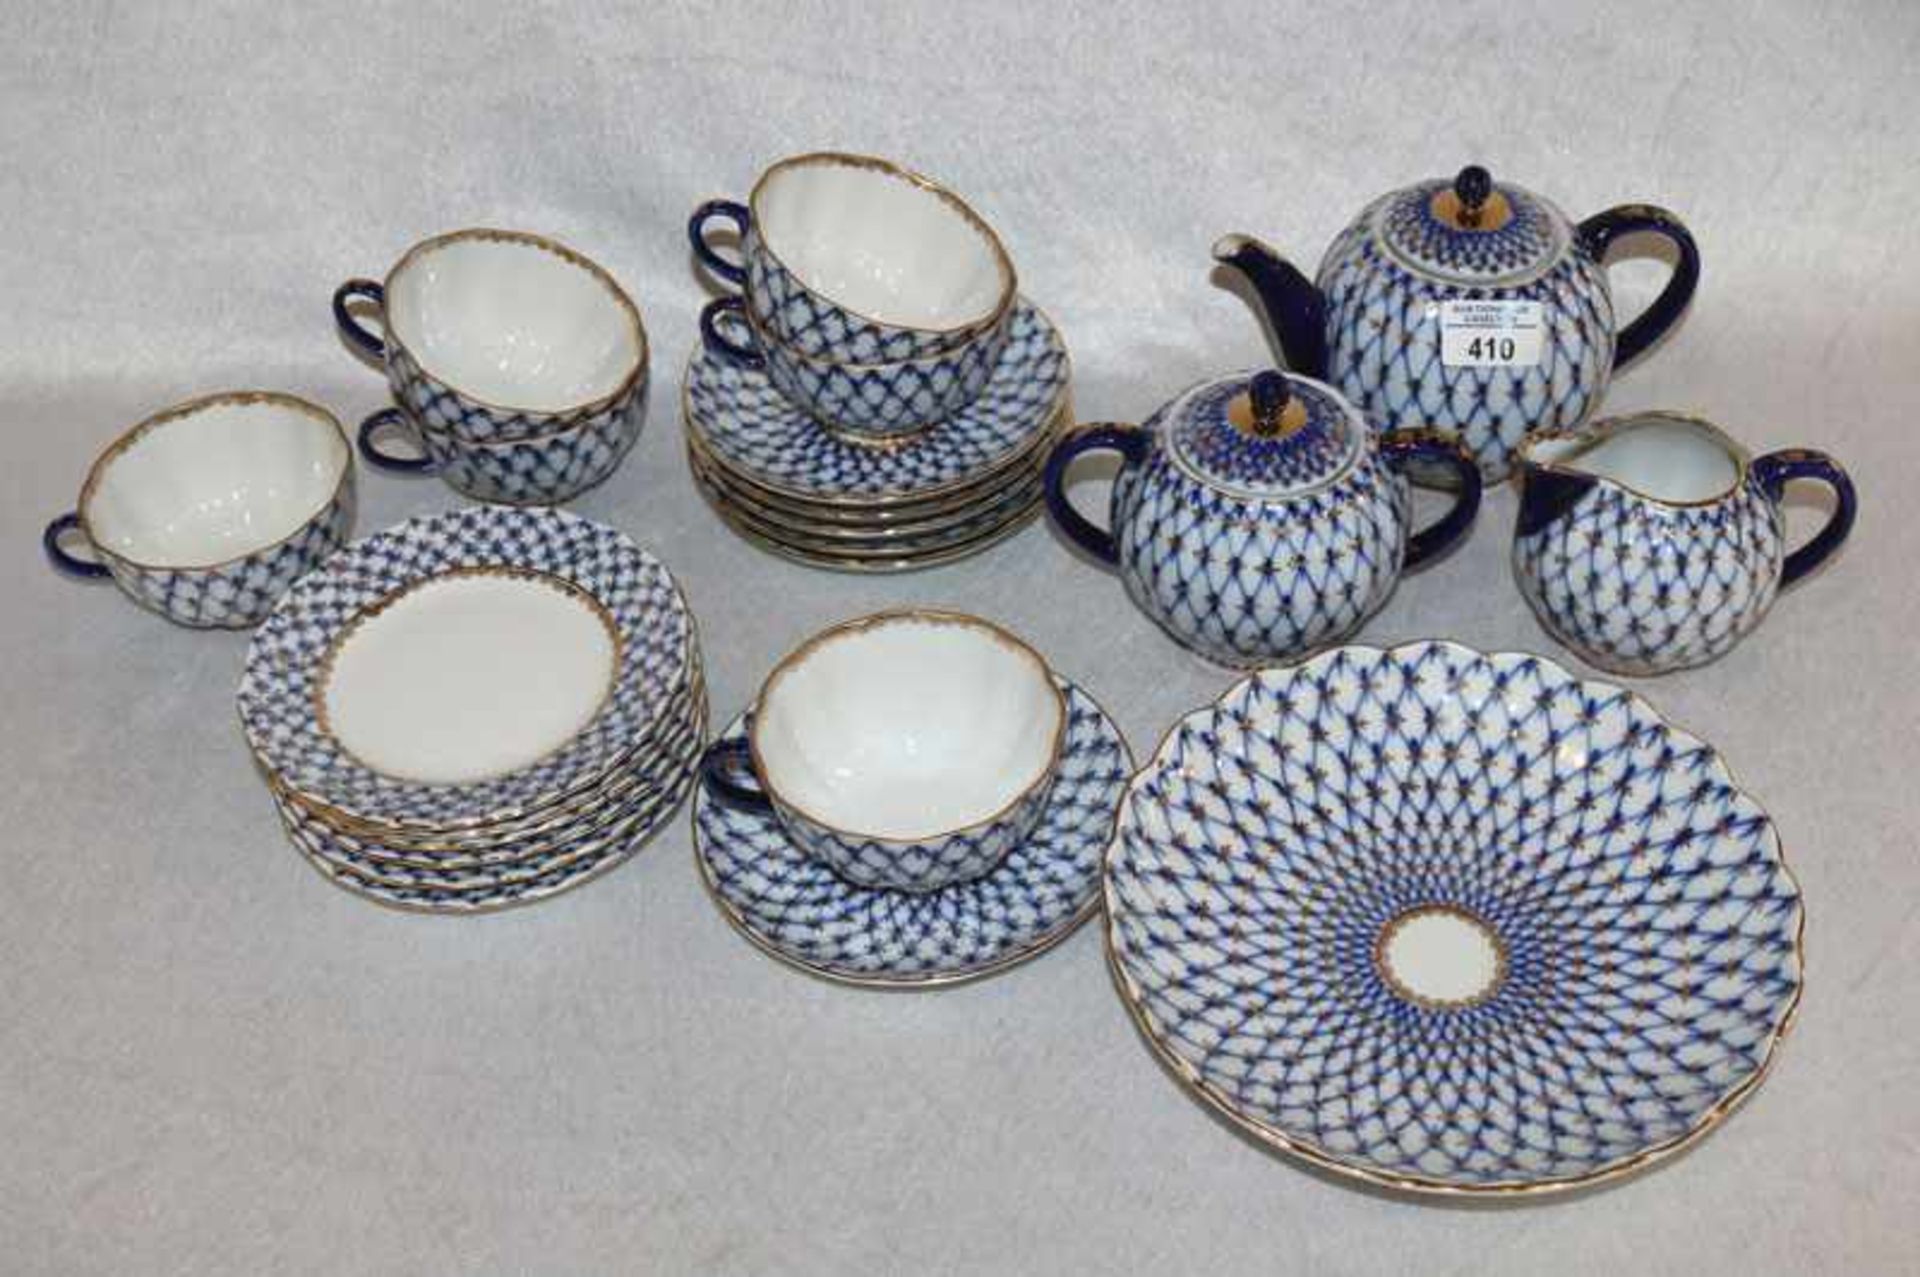 Russisches Tee-Service, Dekor Kobaltnetz, Handbemalt, Teekanne, Milch und Zucker, 6 Teetassen mit